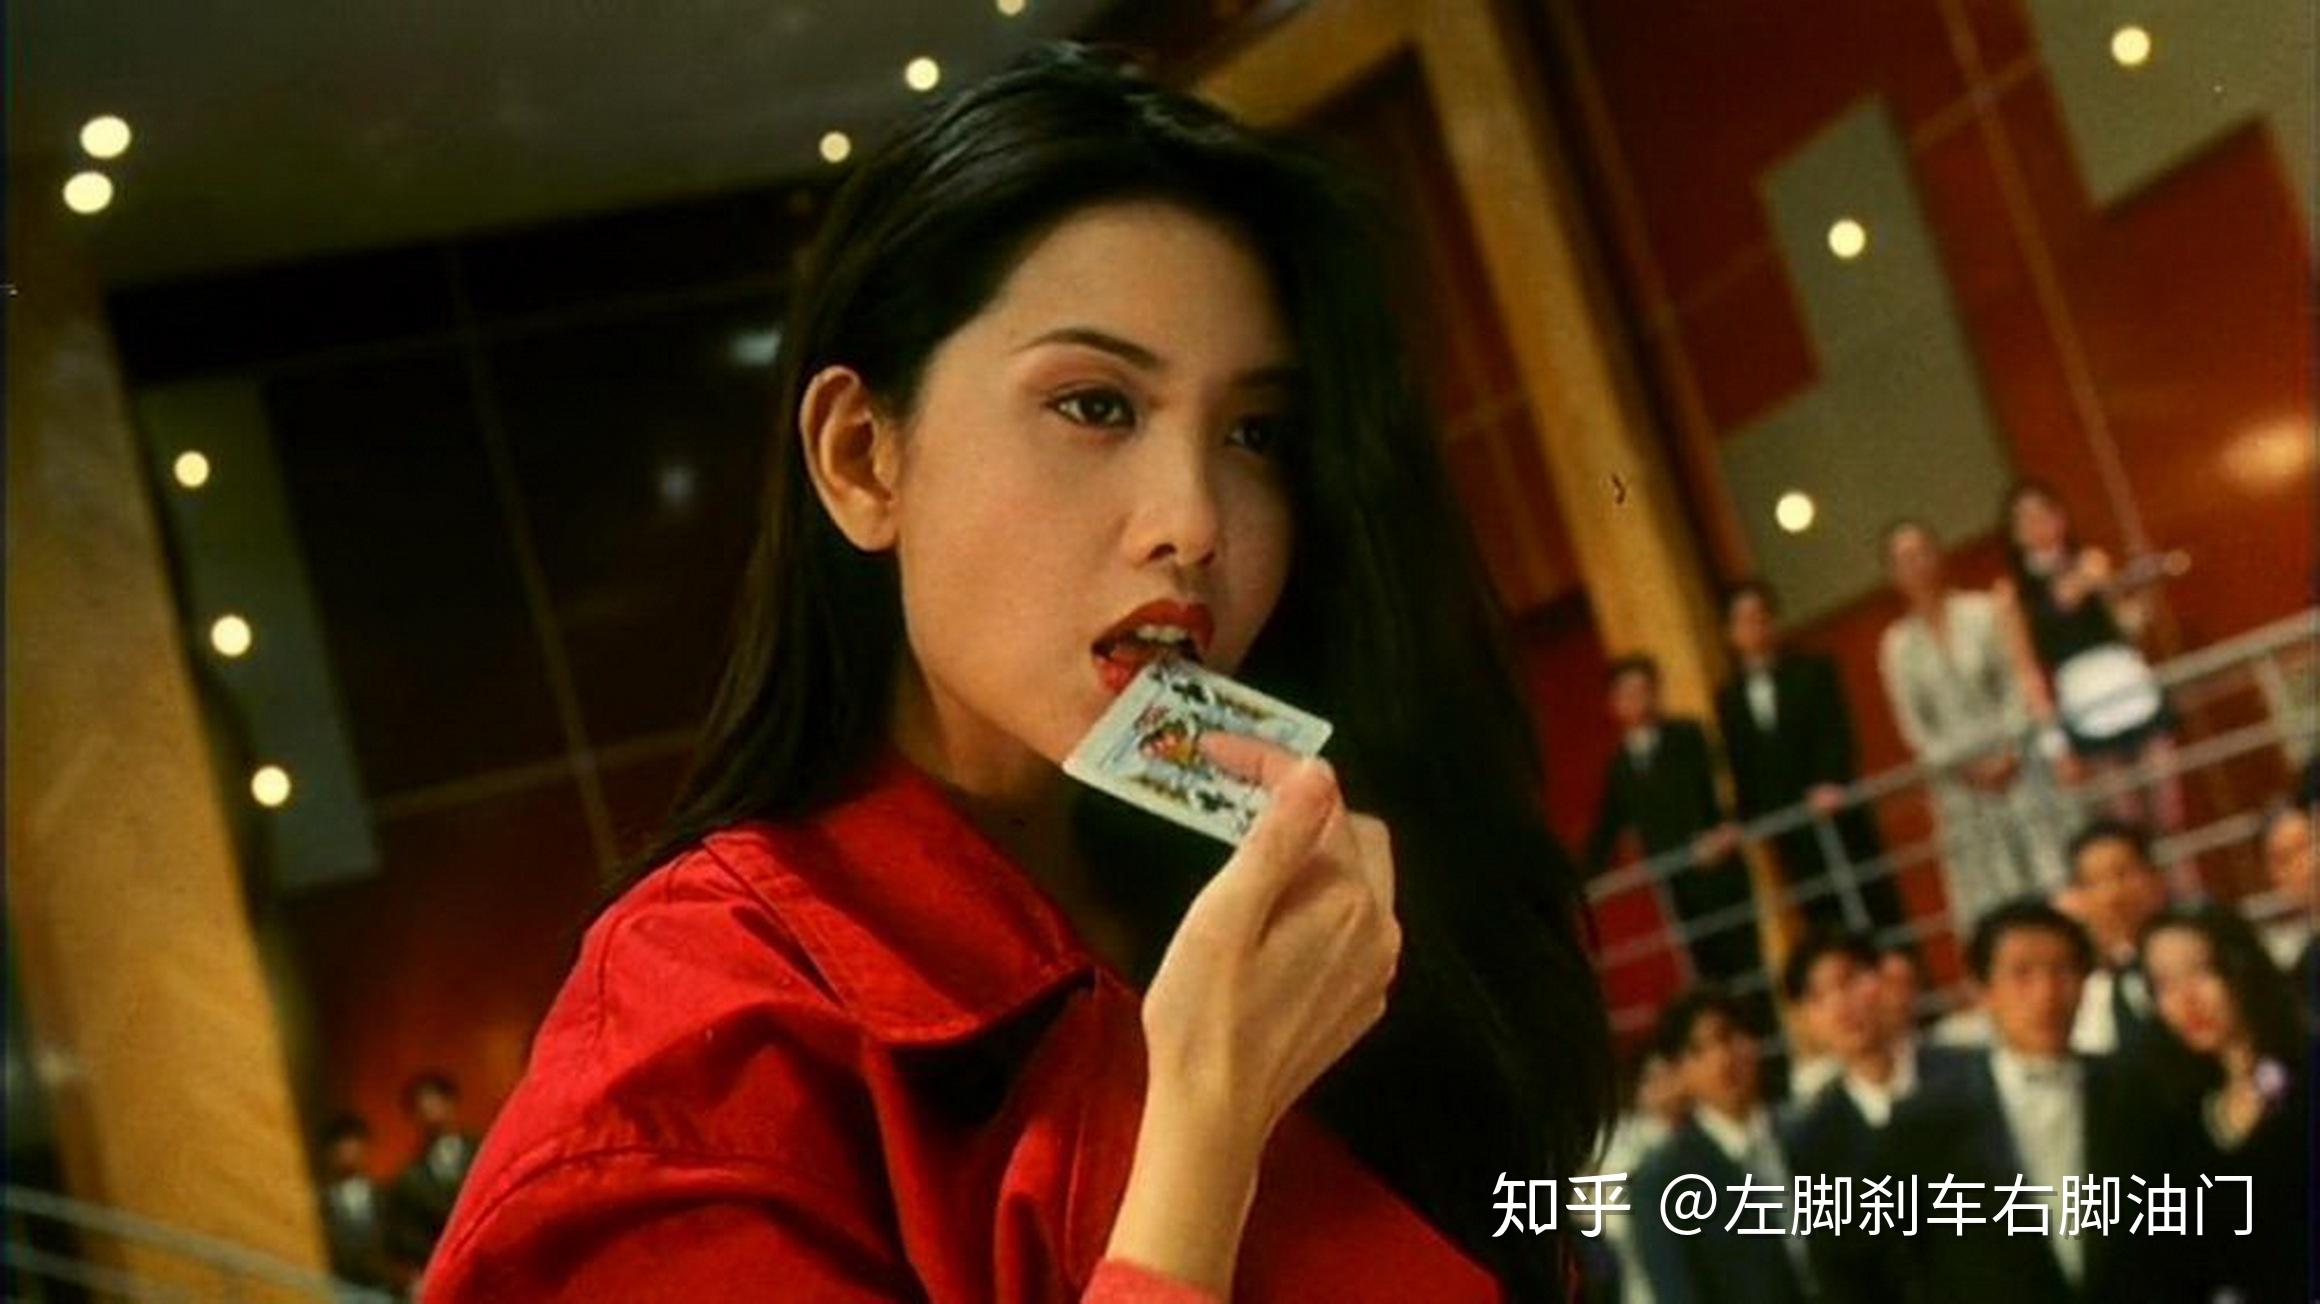 90年代香港电影推荐 - 知乎